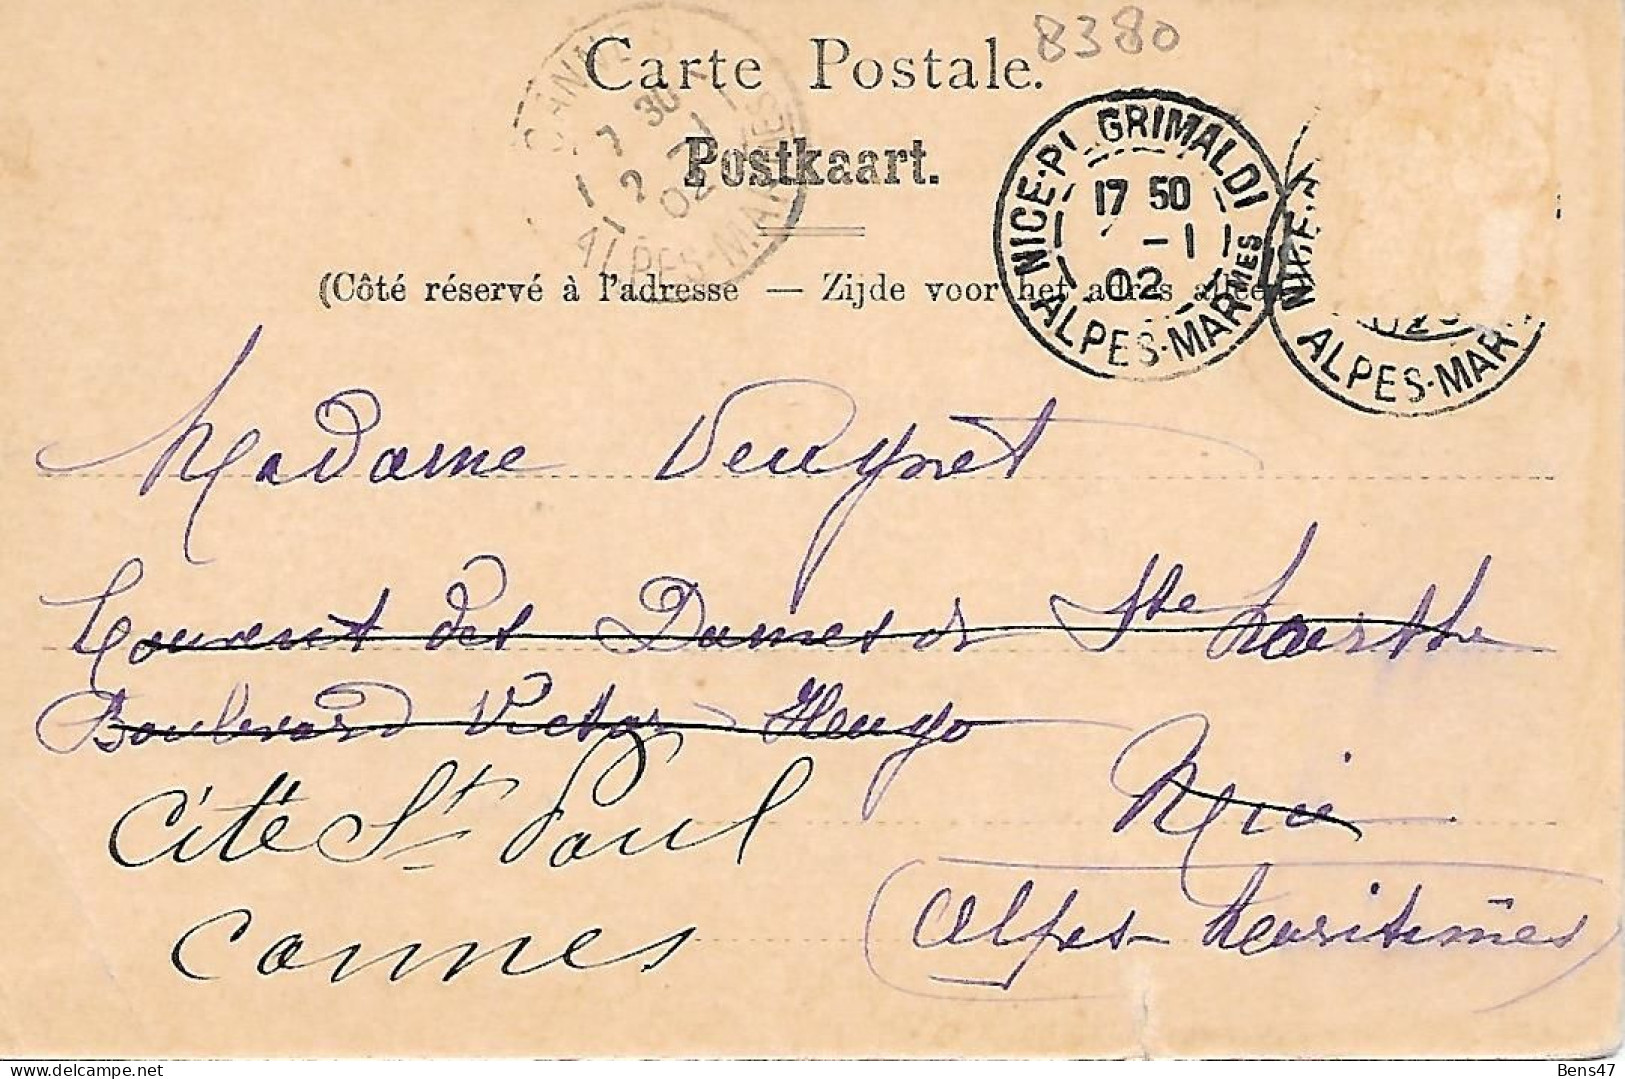 Liège Observatoire De Cointe  2-1-1902 - Liege